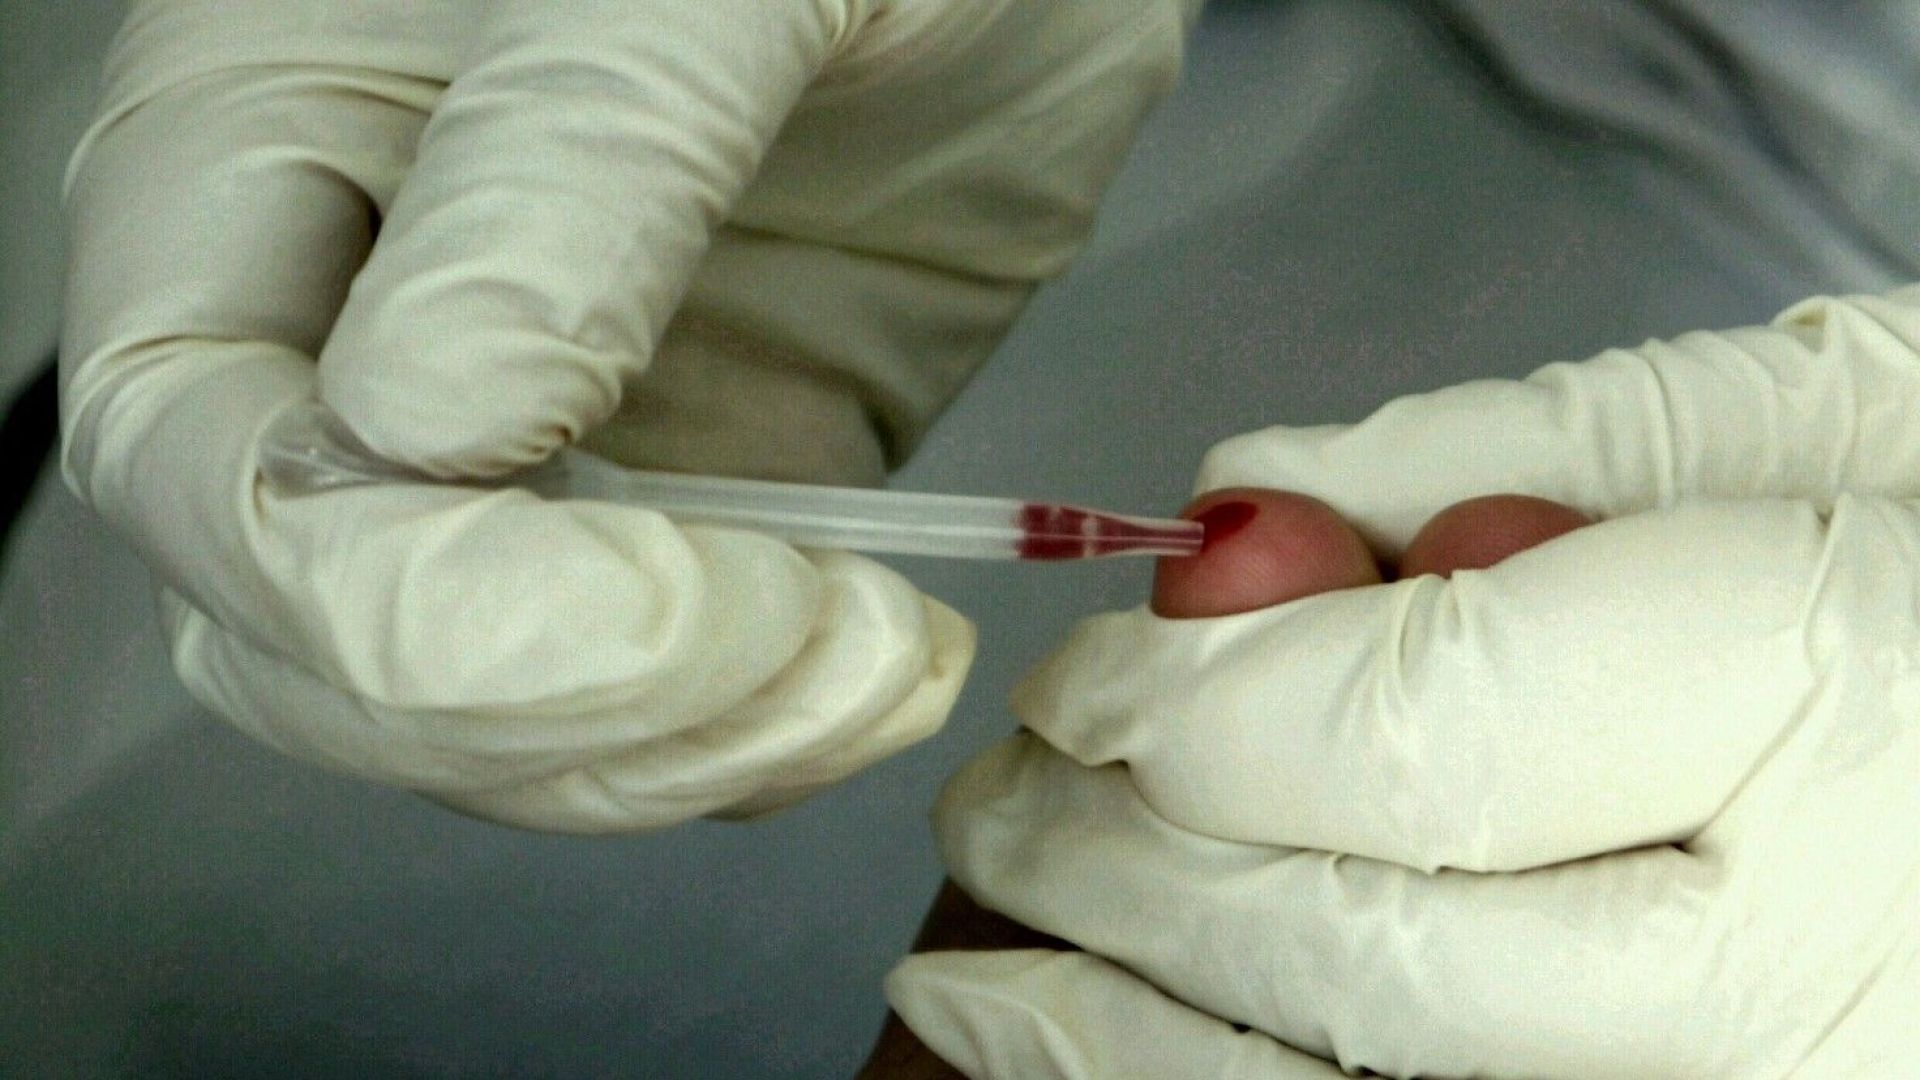 16-годишните без съгласие на родител при тестове за бременност и ХИВ